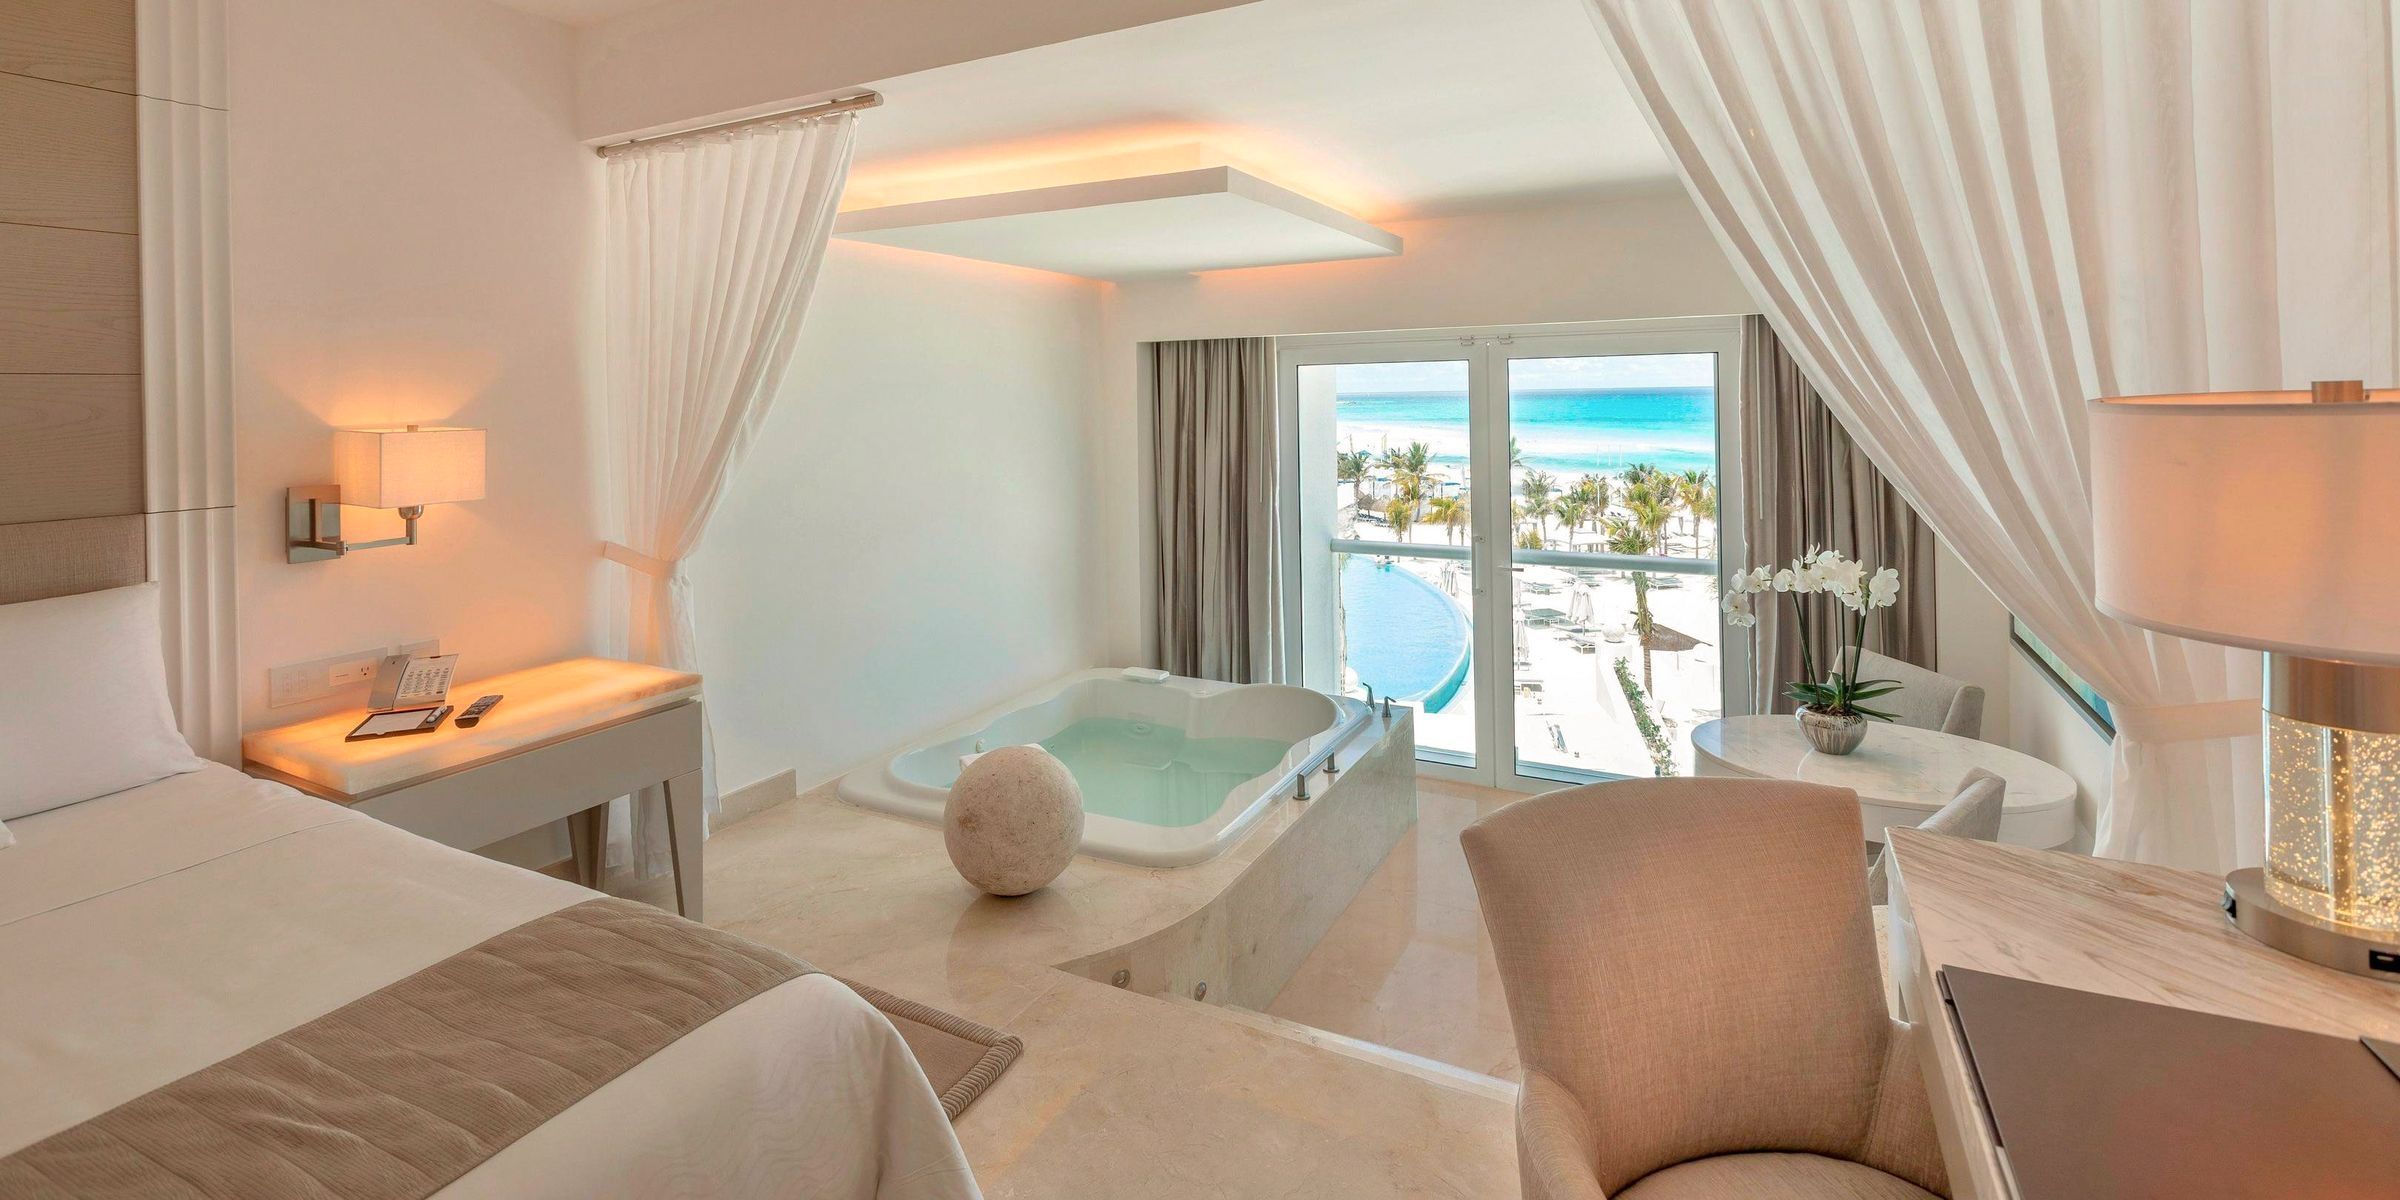 Best honeymoon suite in Cancun